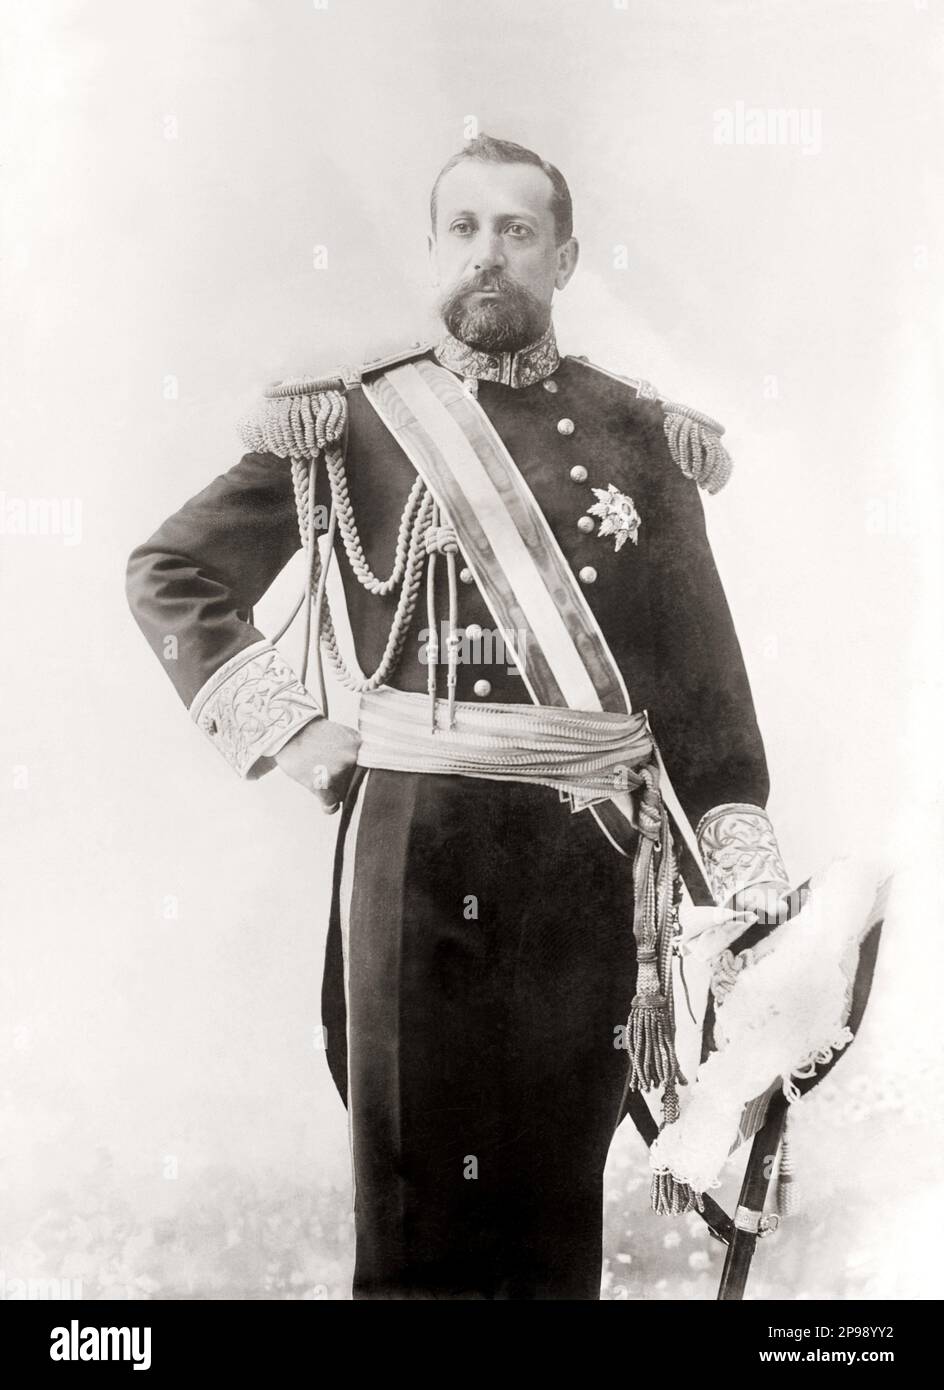 1910 Ca : der Prinz von Monaco ALBERT I ( 1848 - 1922 ) GRIMALDI . Sohn von Prinz Charles III. (1818 - 1889 ) und Gräfin Antoinette Ghislaine de Merode-Westerloo ( 1828 - 1864 ) - ALBERTO - Könige - nobili - Nobiltà - Portrait - Rituto - Bart - barba - Militäruniform - Divisa uniforme militare ---- Archivio GBB Stockfoto